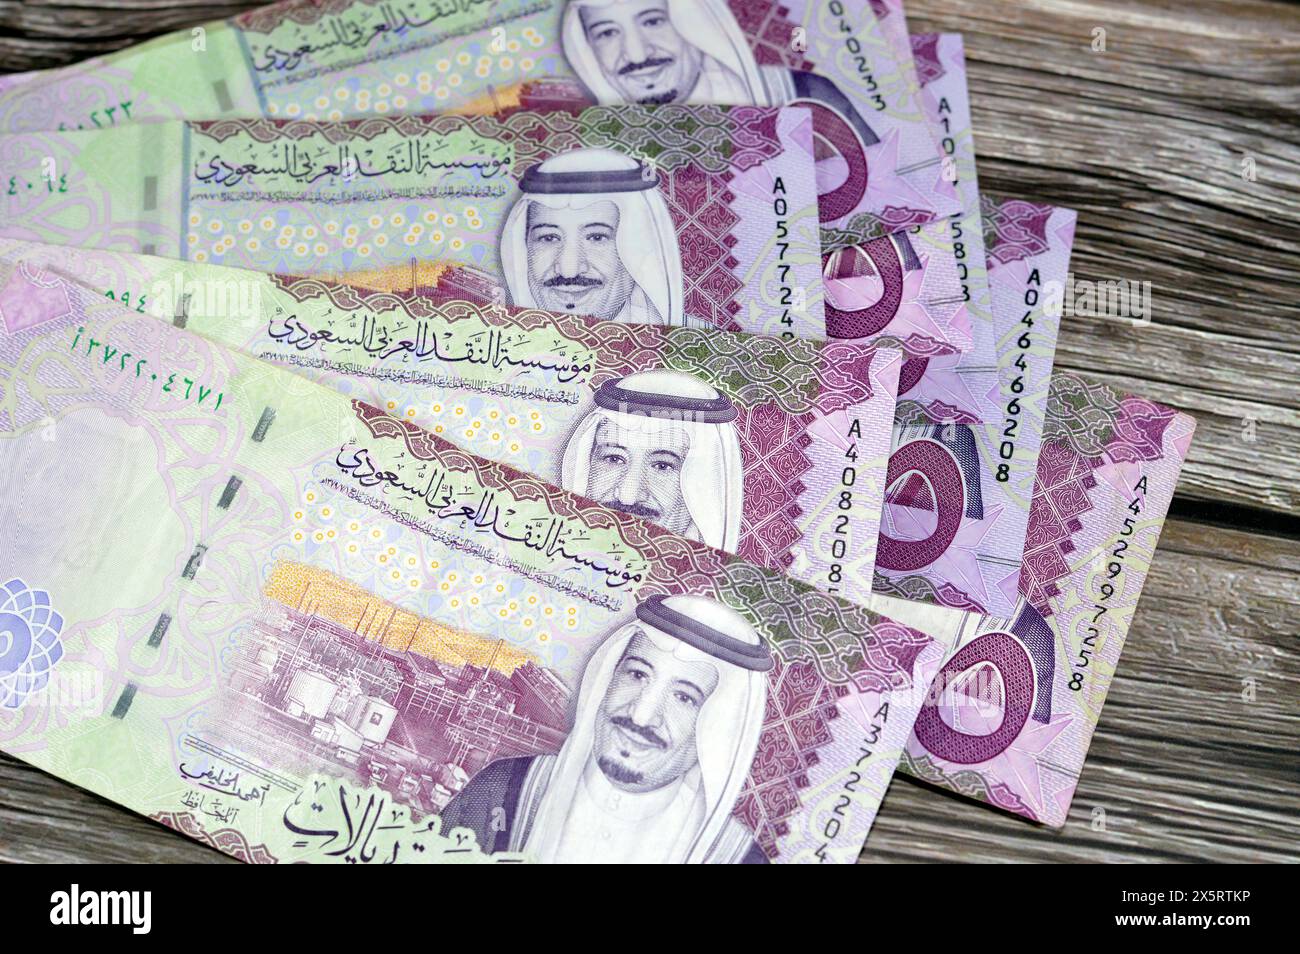 5 SAR fünf Saudi-Arabien Riyals Bargeld Banknotenscheine Serie 1441 AH zeigt die Shaybah-Ölraffinerie in Rub' al Khali und König Salman bin Abdulaziz Al Stockfoto